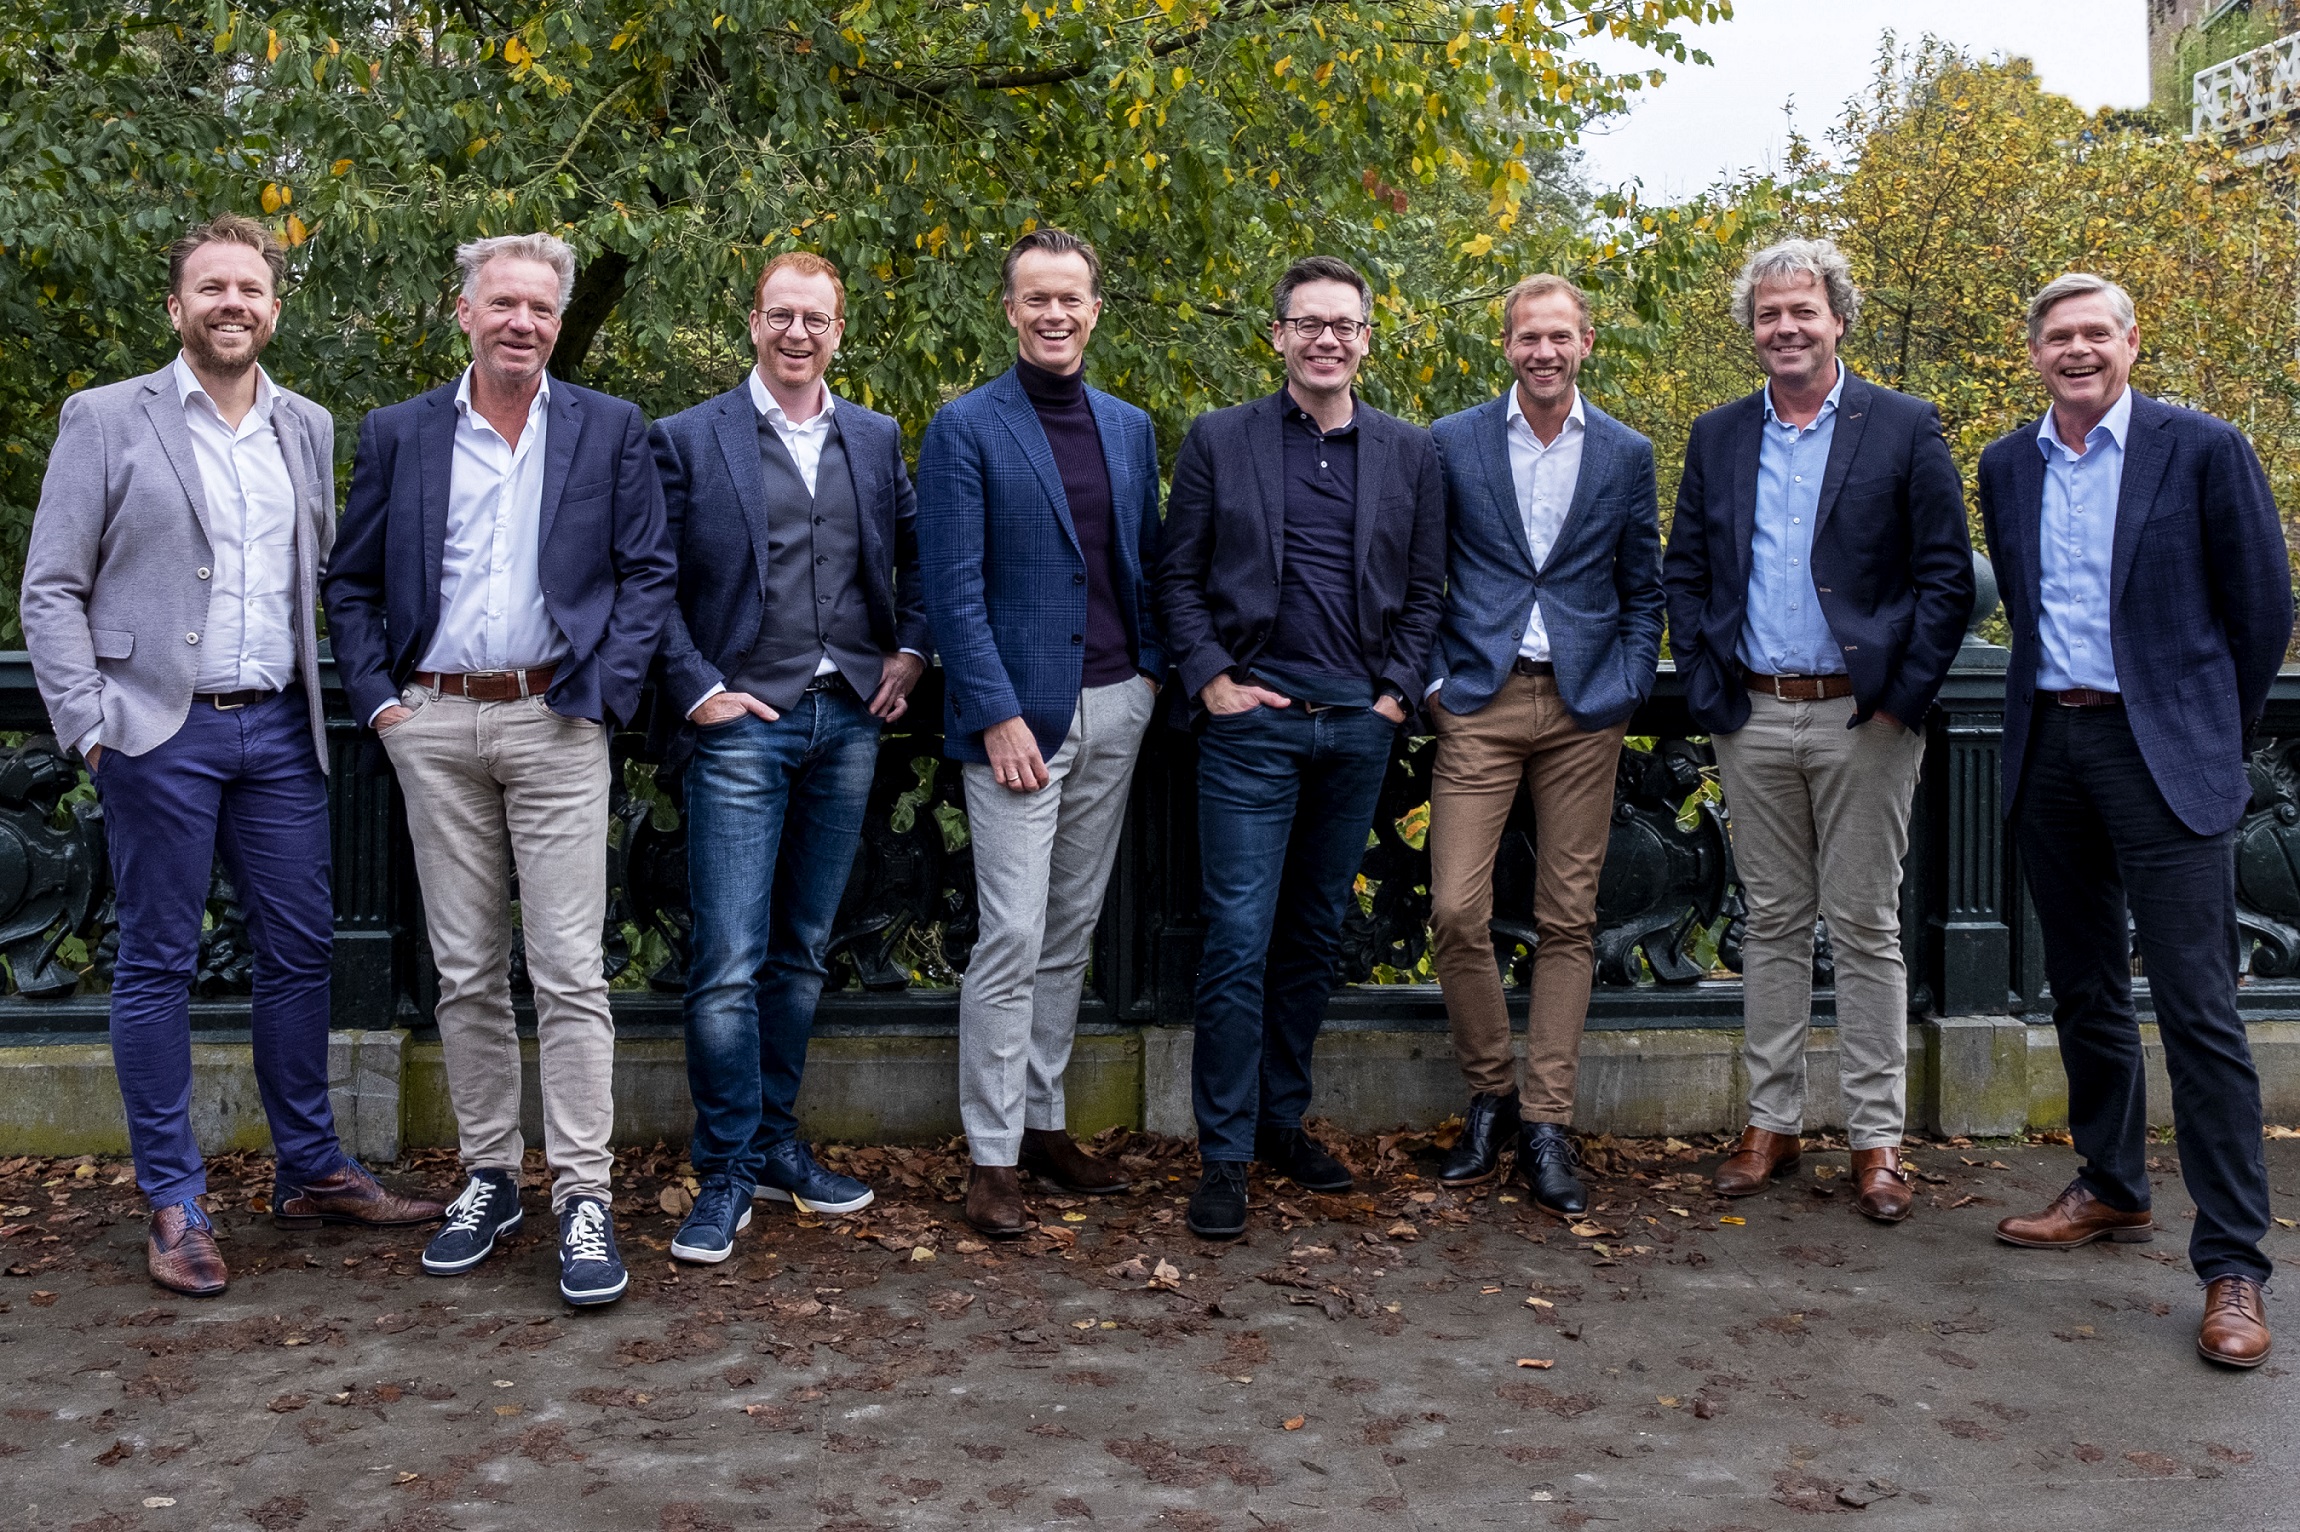 VLNR: Gerben Hoogwerff Kroon, Rob Winkel, Patrick Scherbeijn, Maarten van Montfoort, David Schaap, Jesse van Straaten, Mans Lejeune en Pieter Peletier.